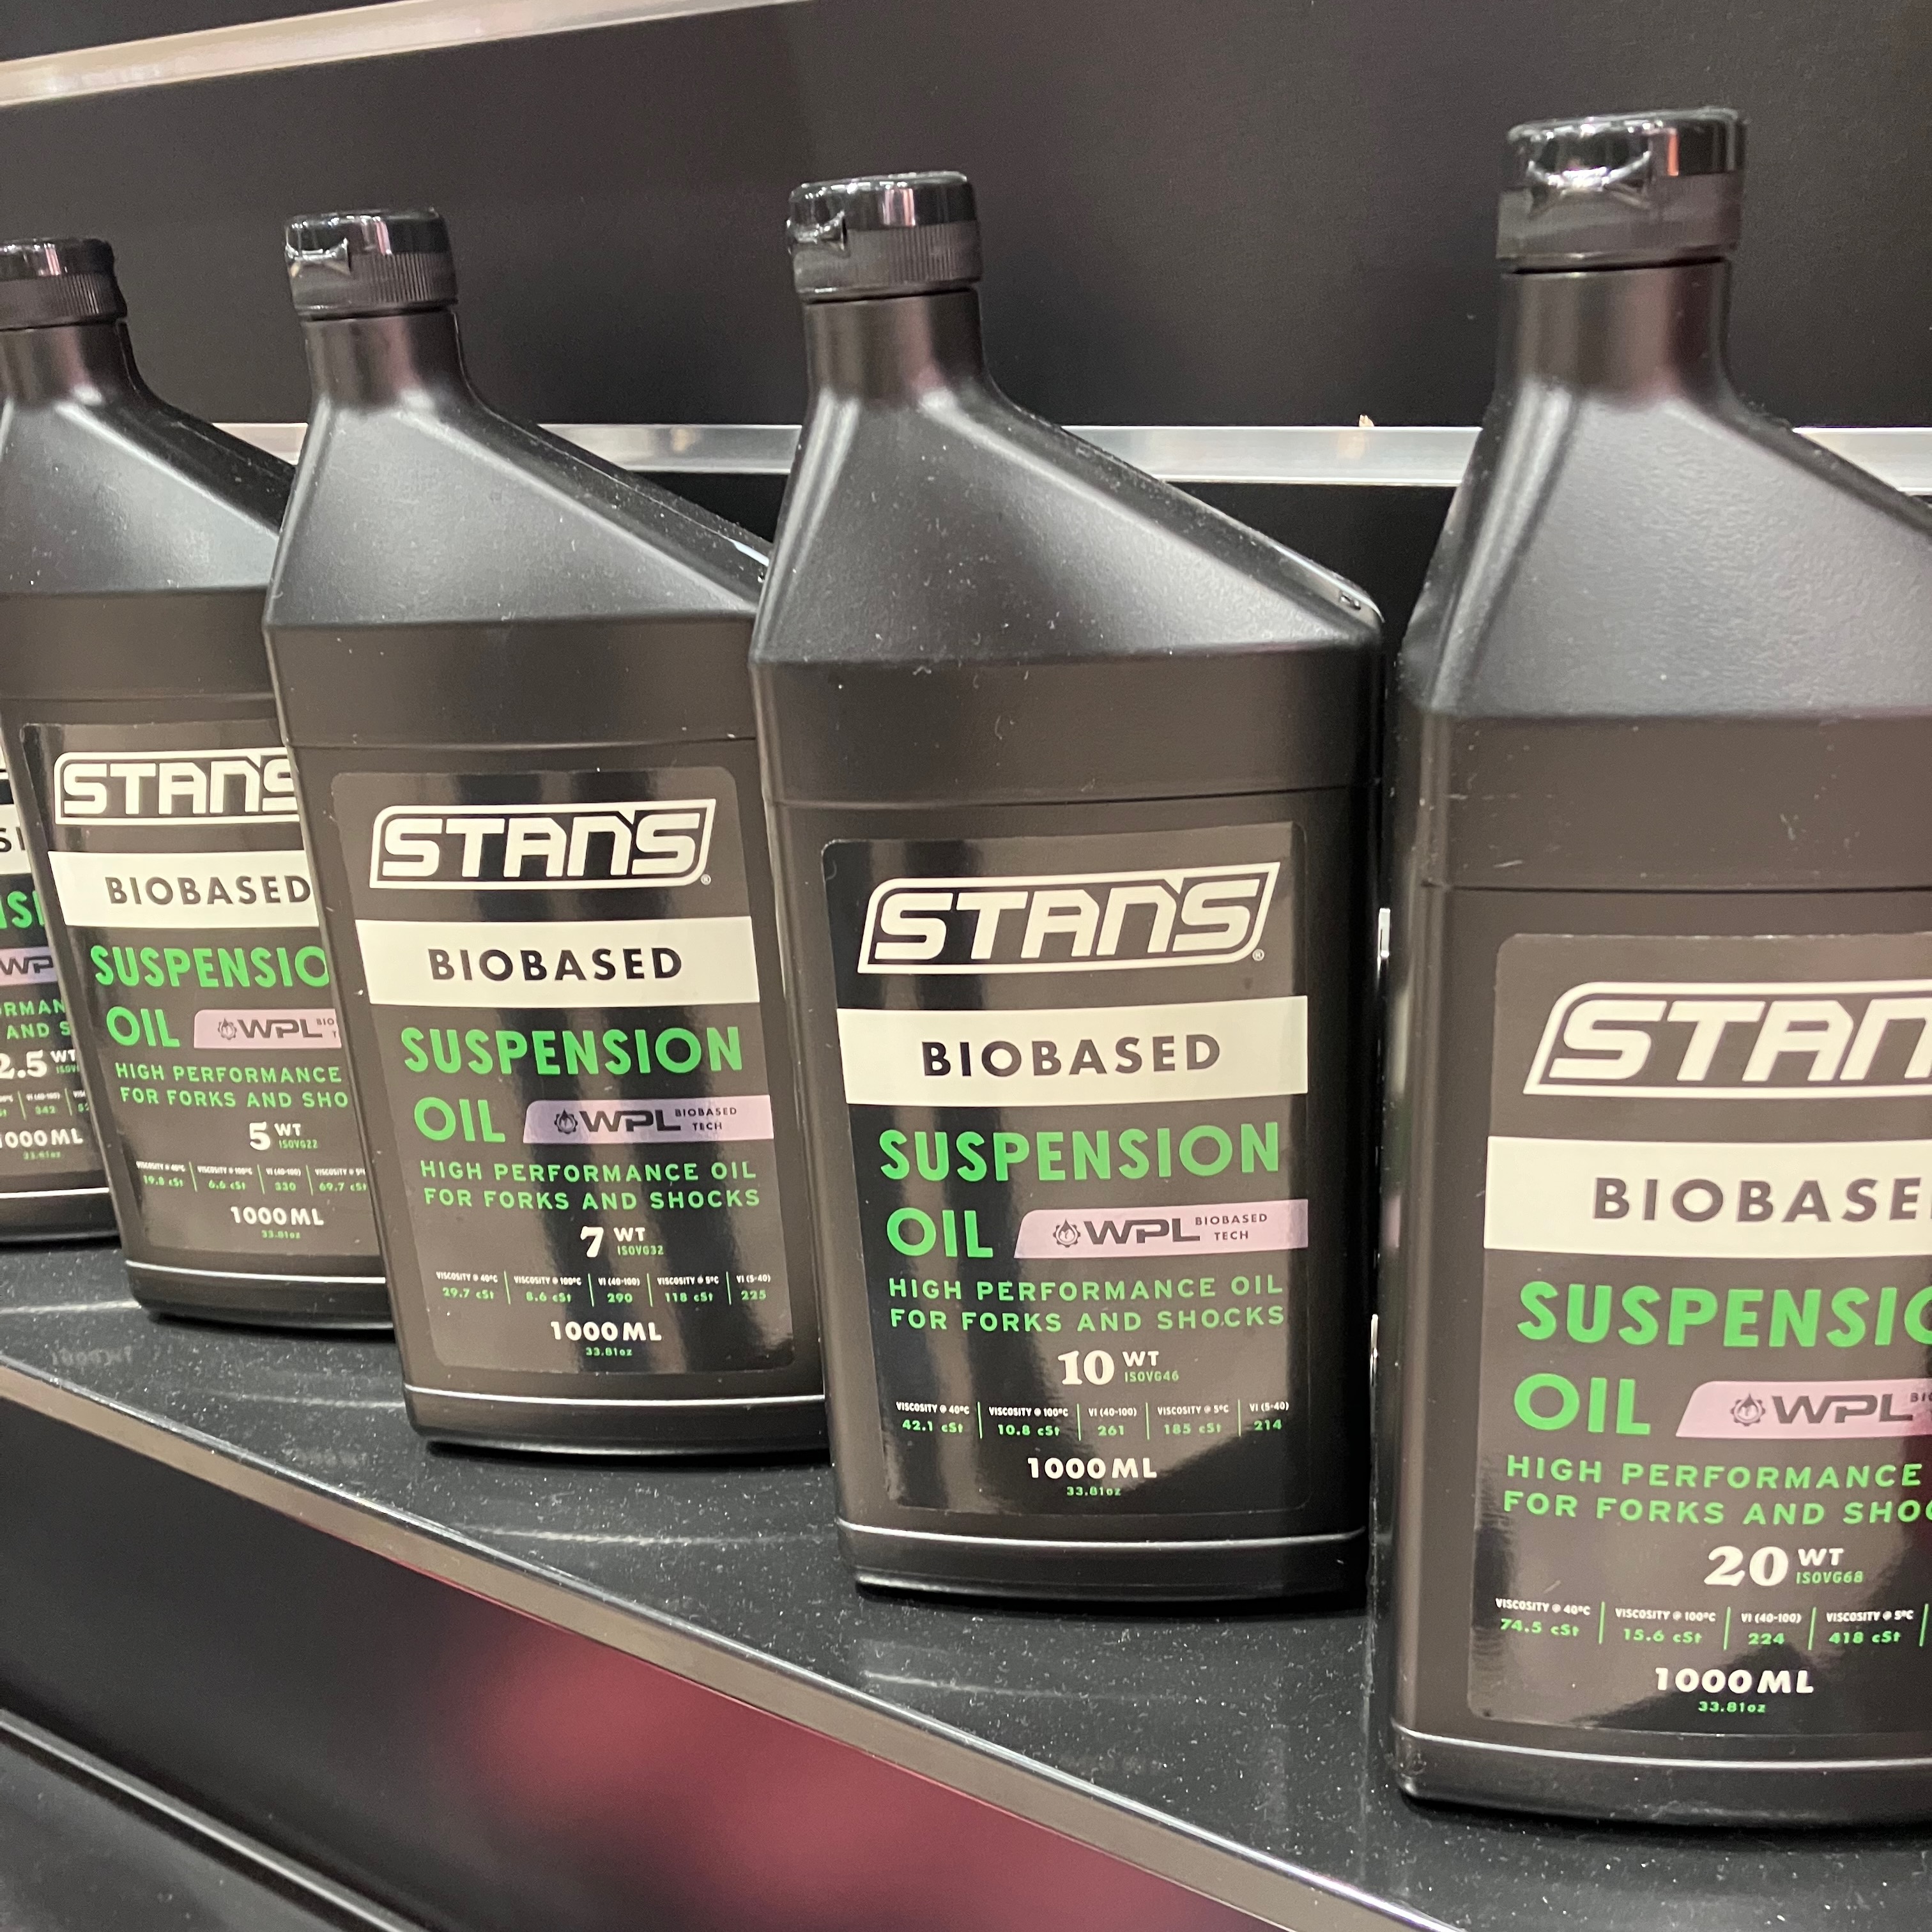 Stan's Biobased Suspension Oil